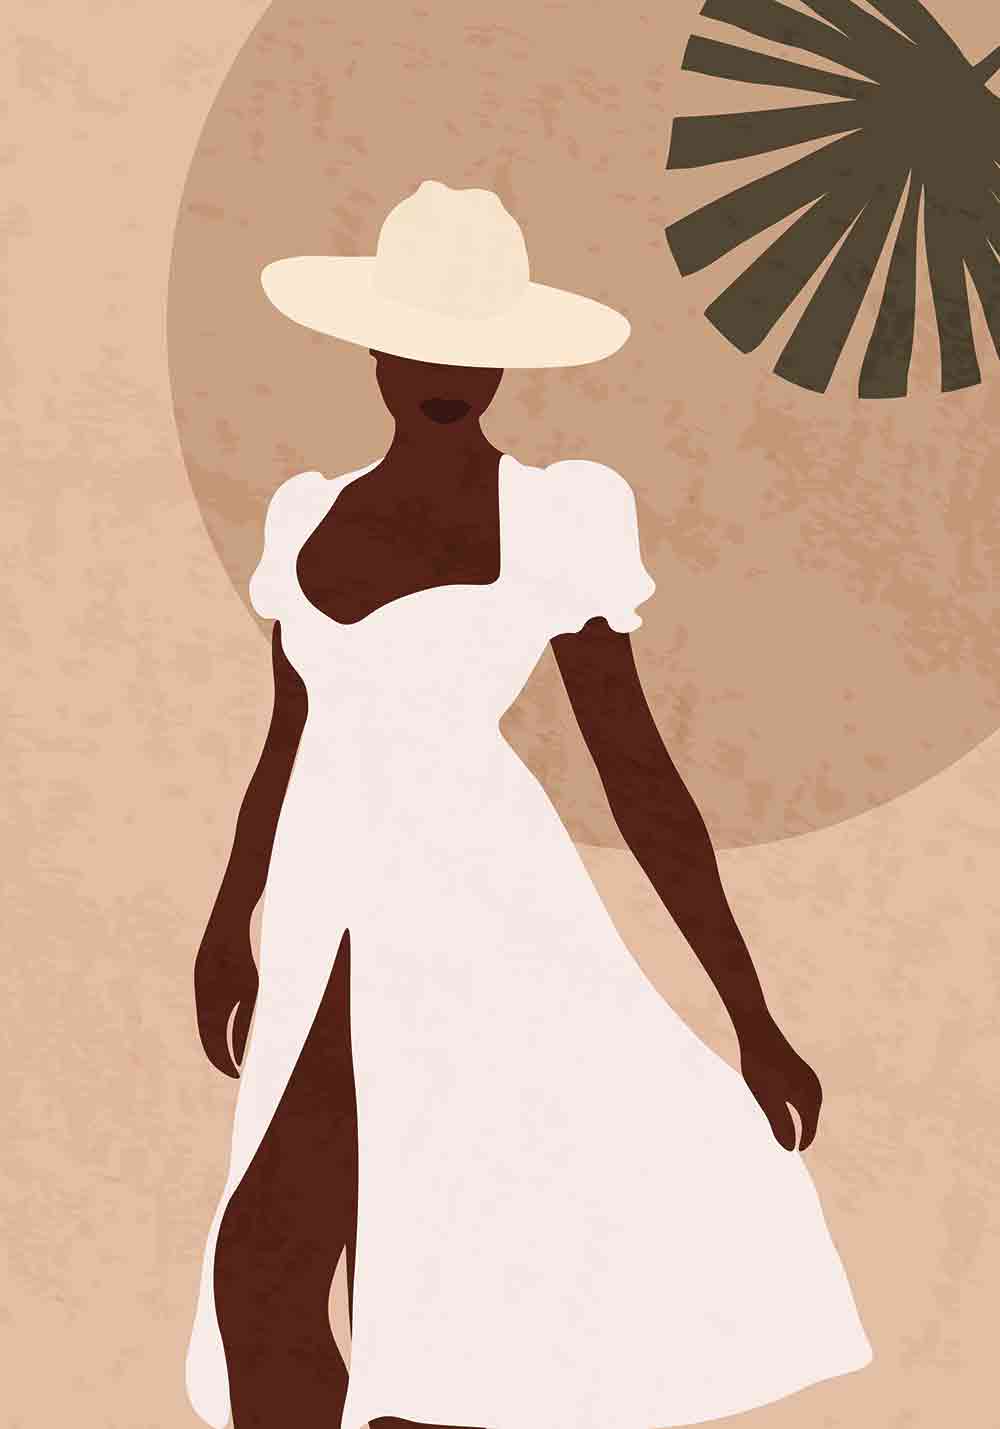 Art boho affiche femme séance photos style boho minimaliste chapeau été poster mural bureau